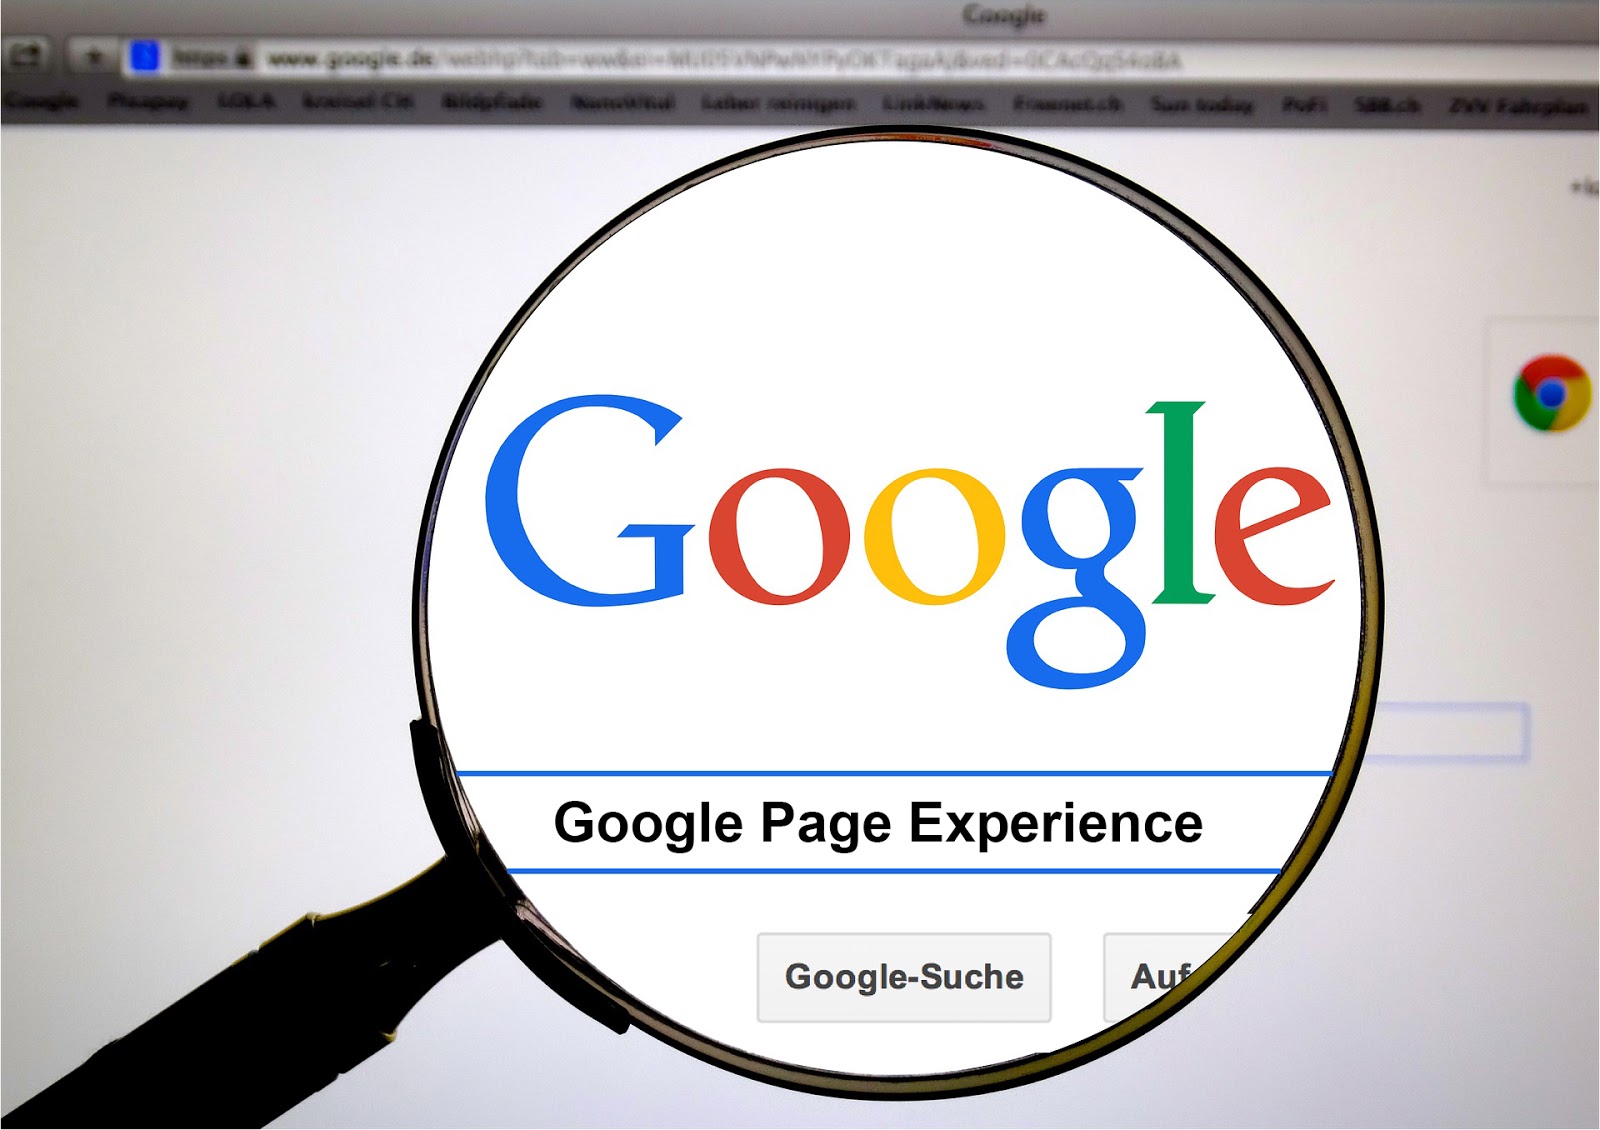 Lupa aumentando a palavra Google em uma tela de computador. Embaixo da palavra, entre duas linhas azuis, está a frase Google Page Experience. #inset